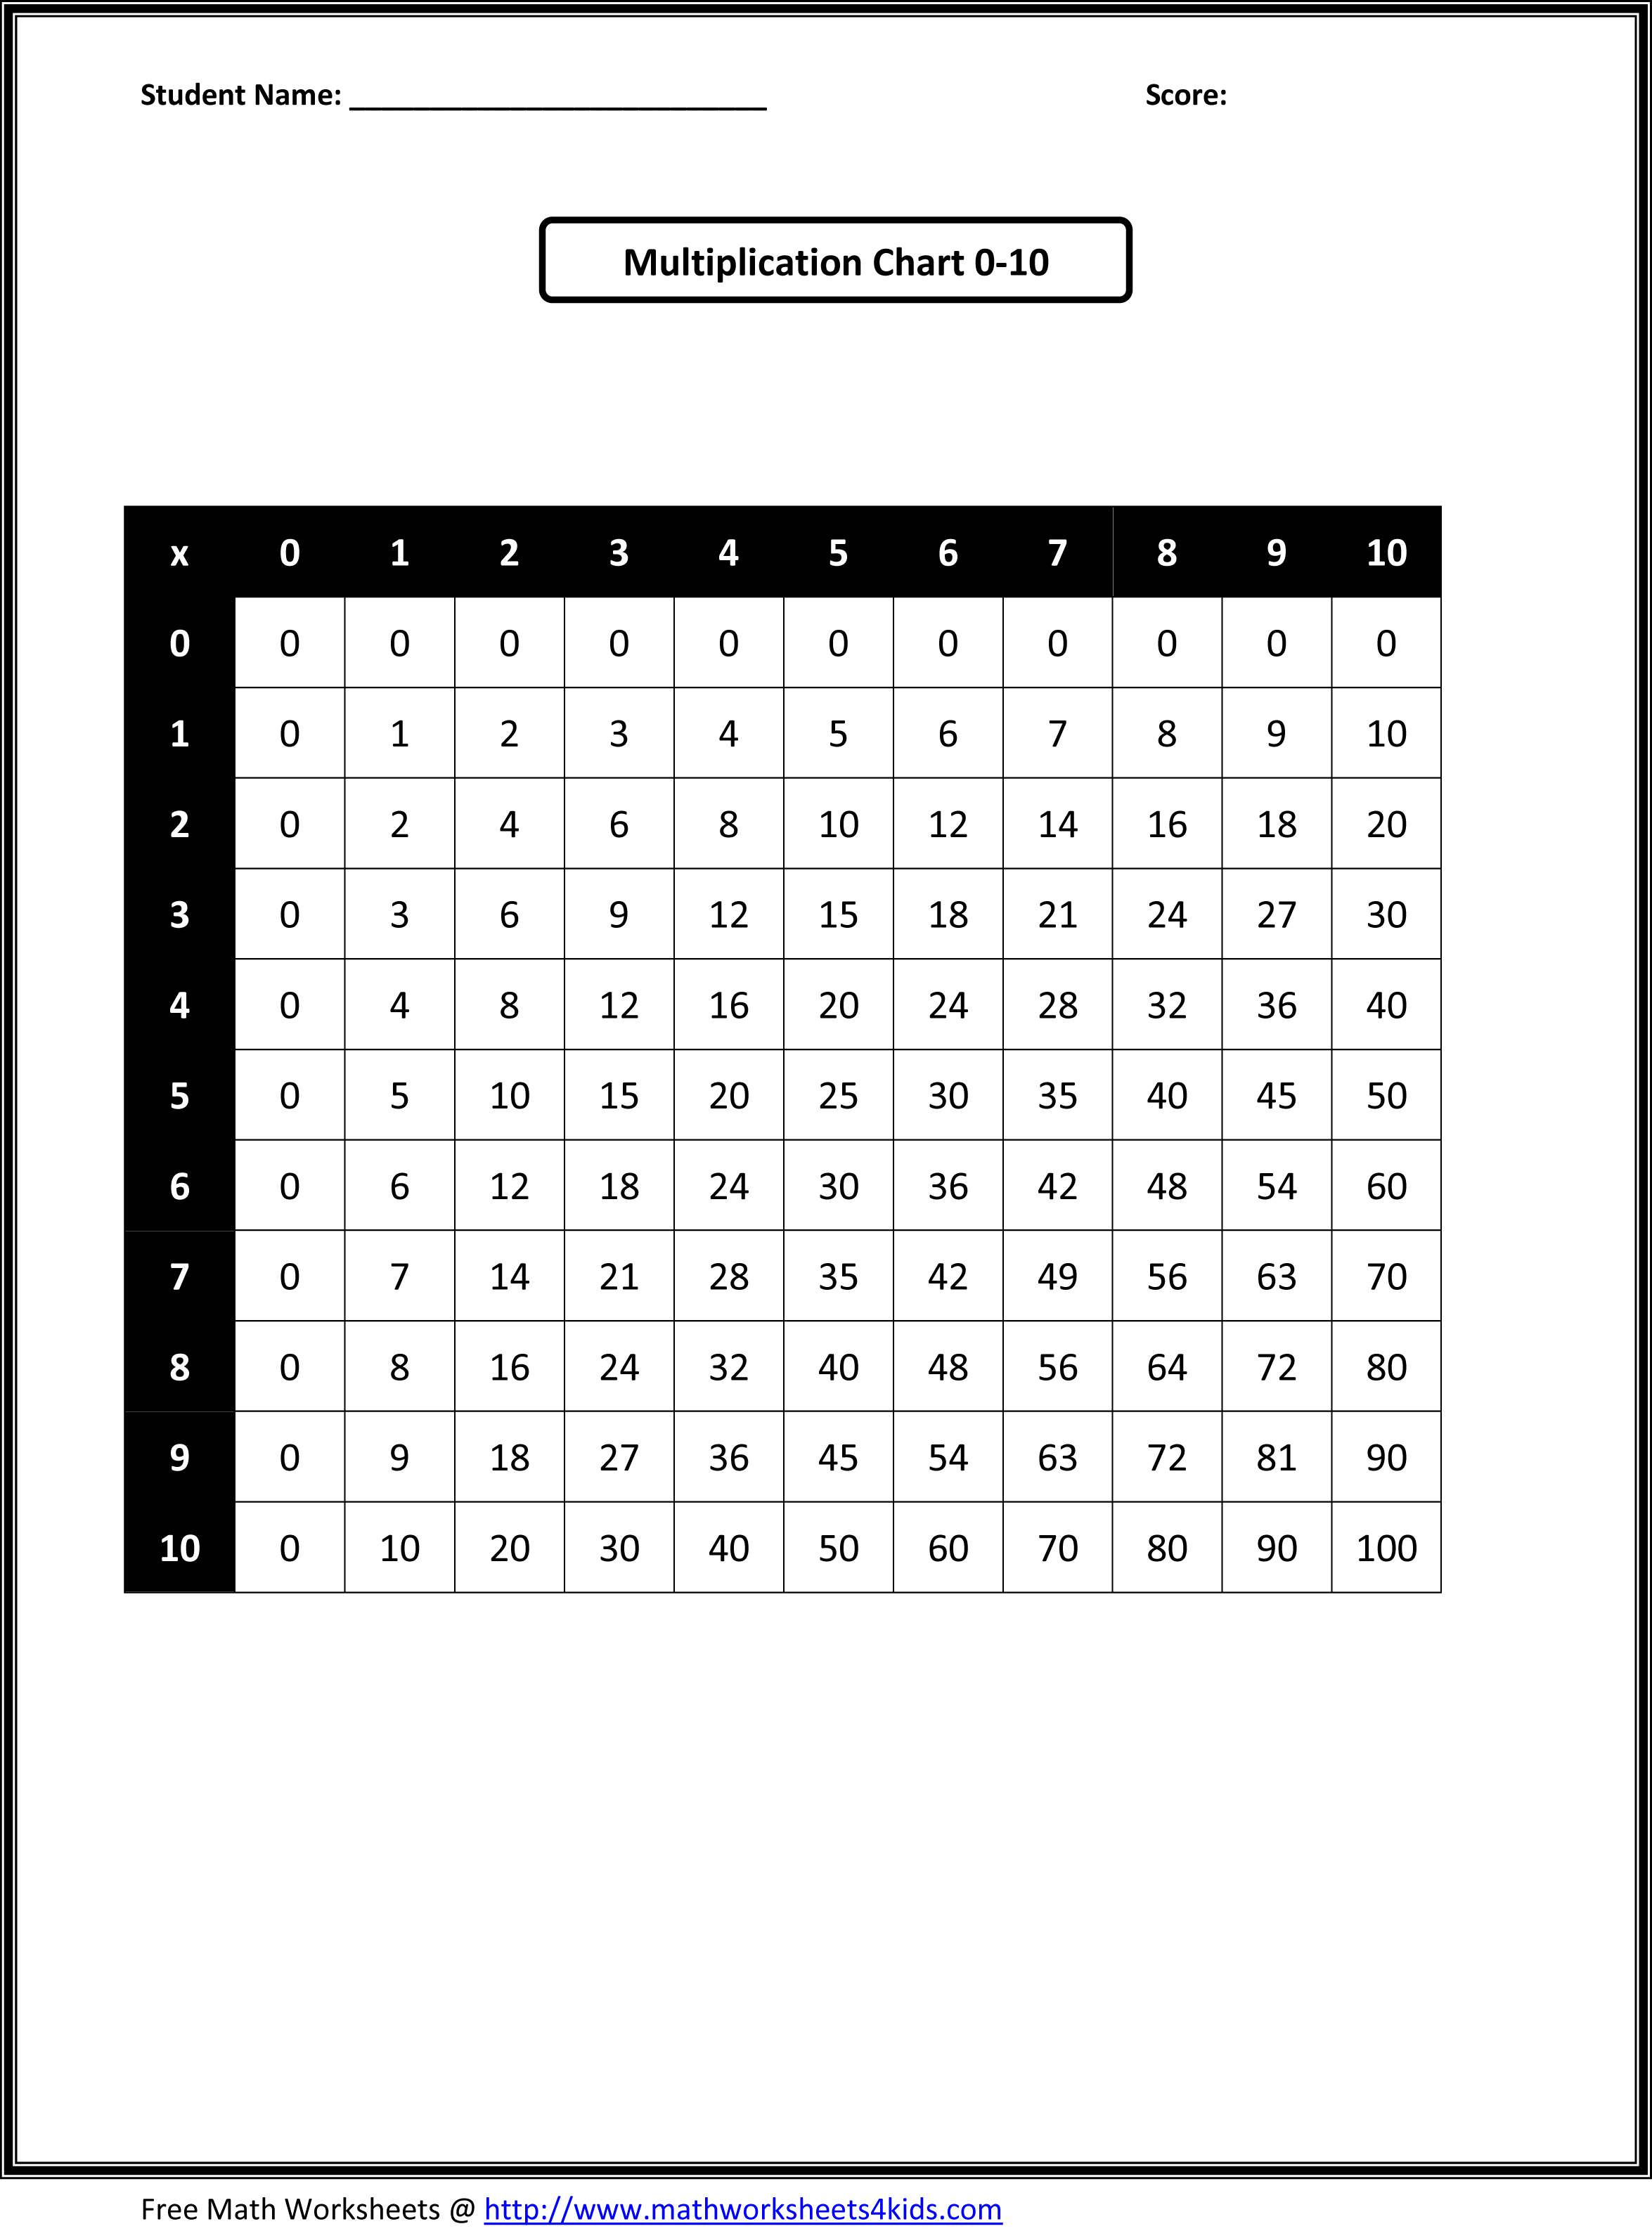 12 Best Images of Multiplication Worksheets 111 100